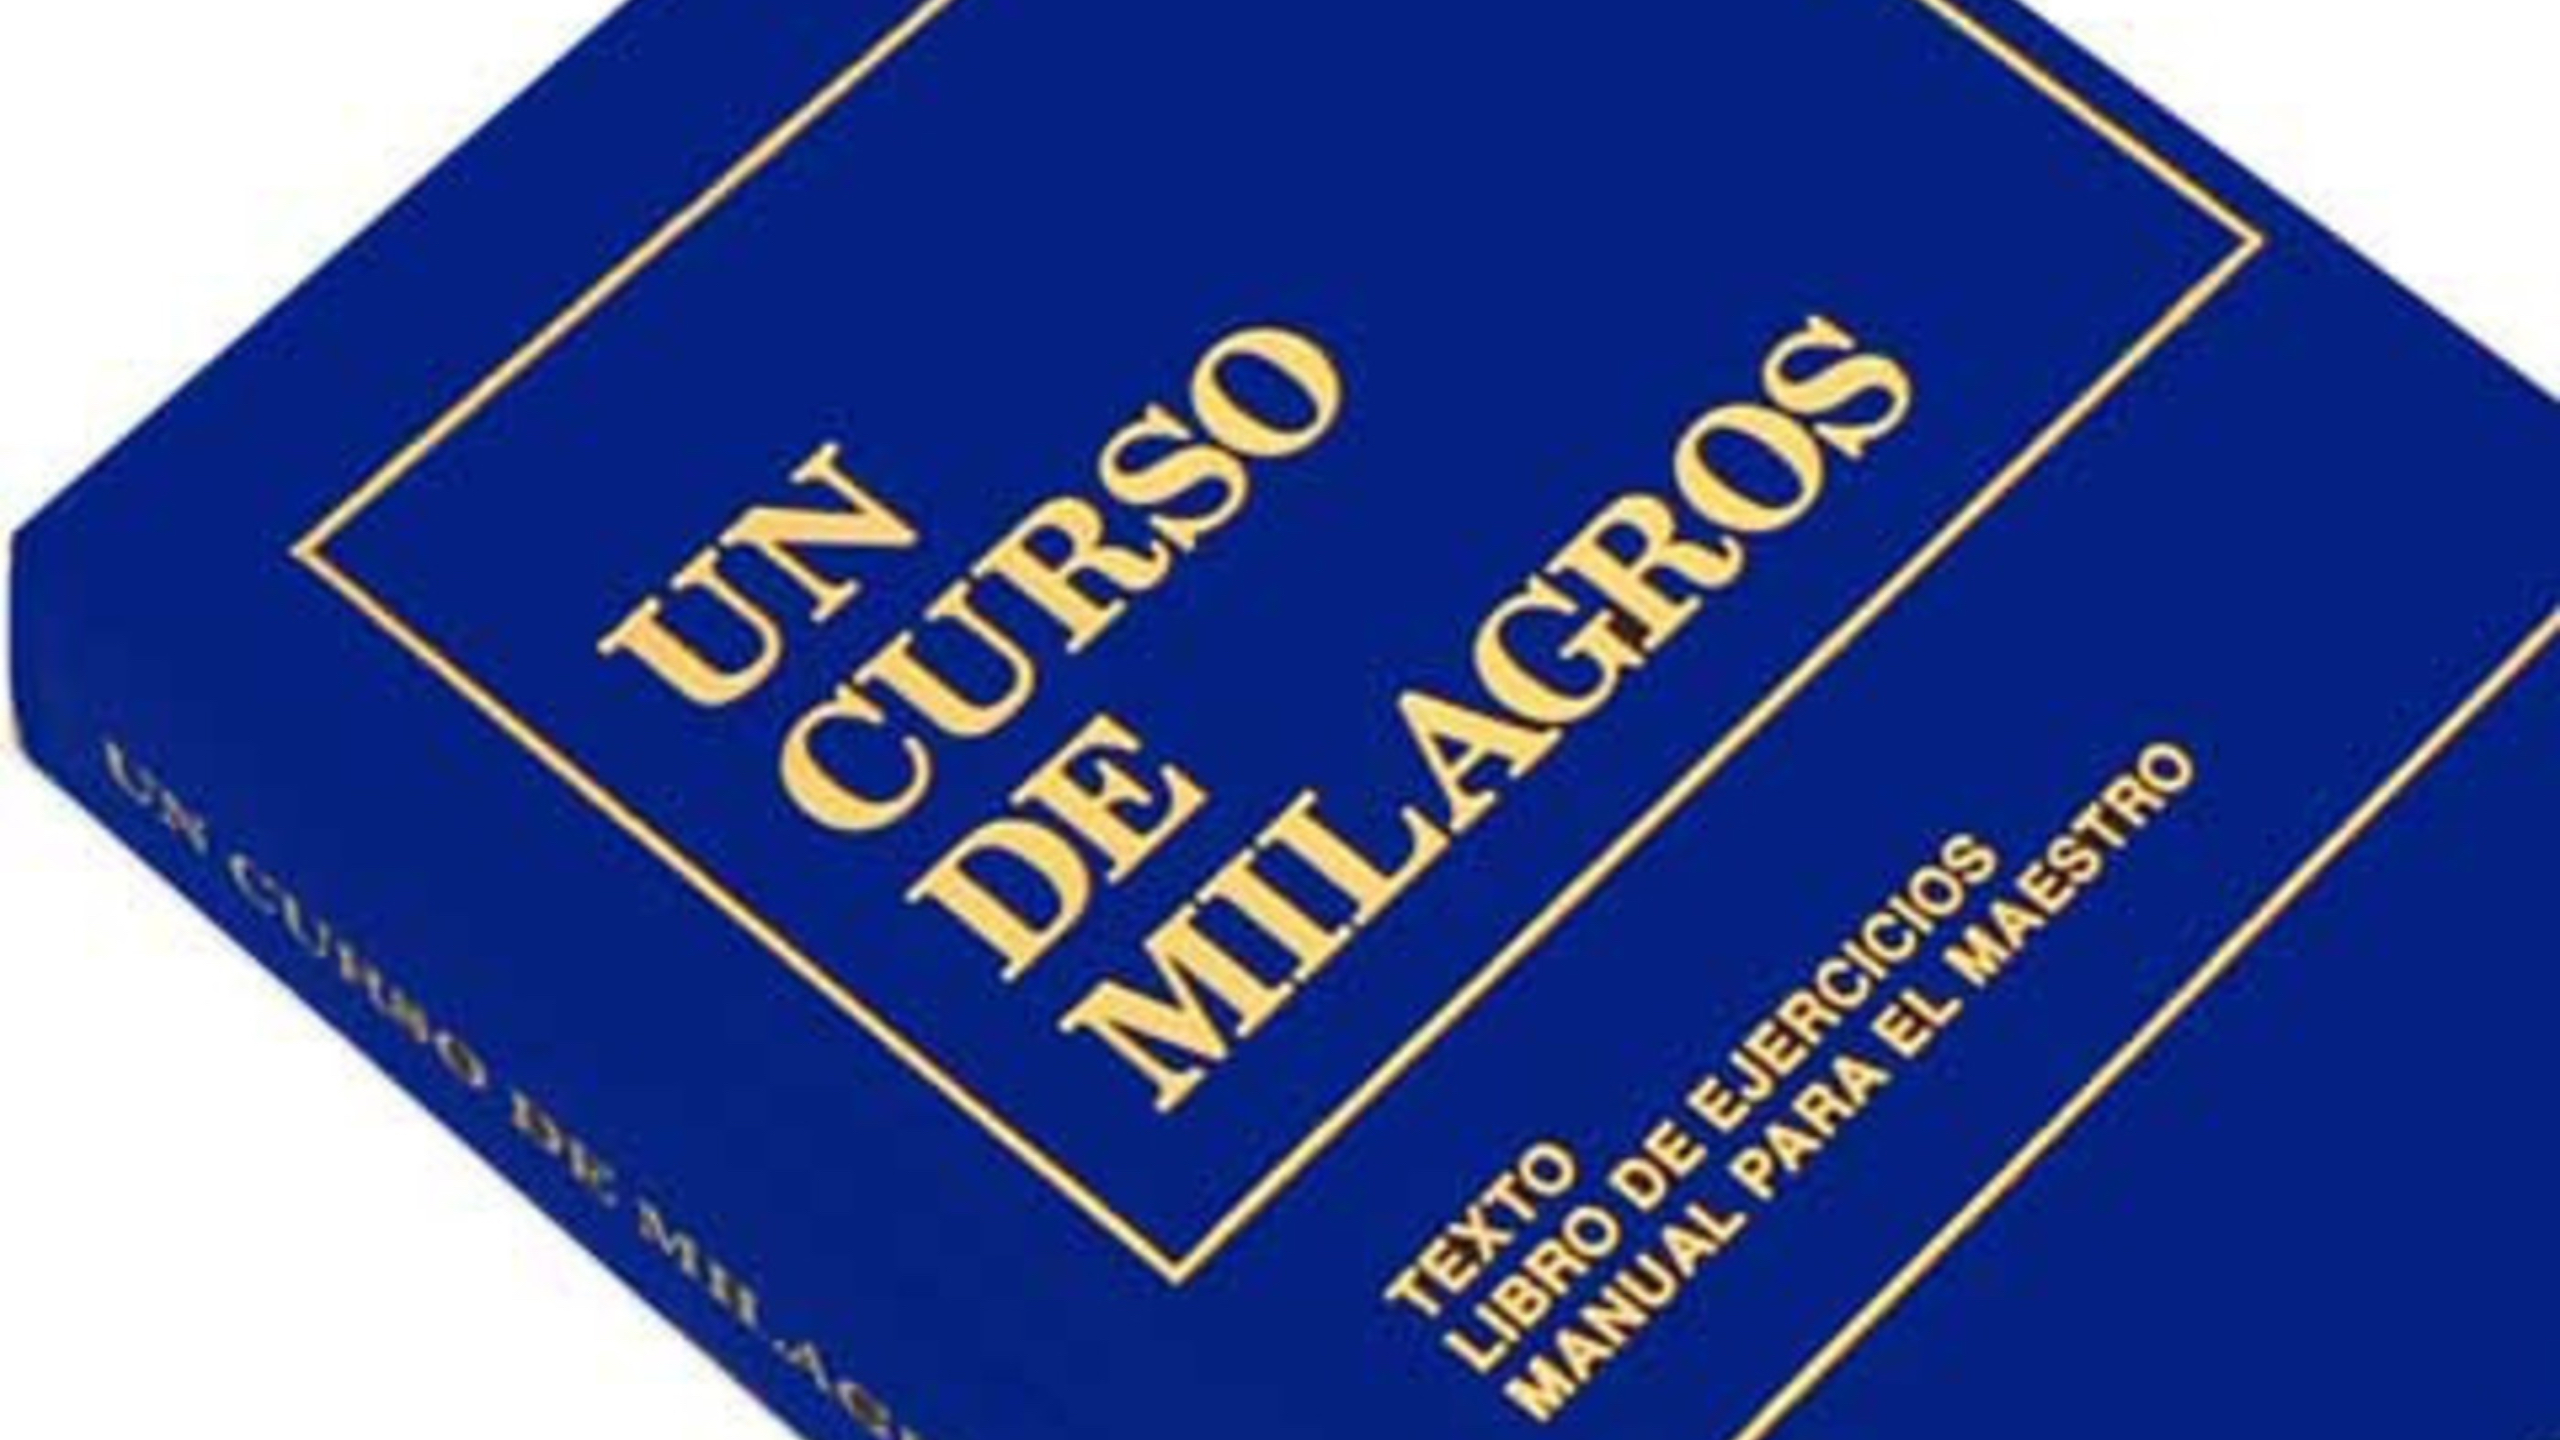 Libro "Un curso de milagros" en español